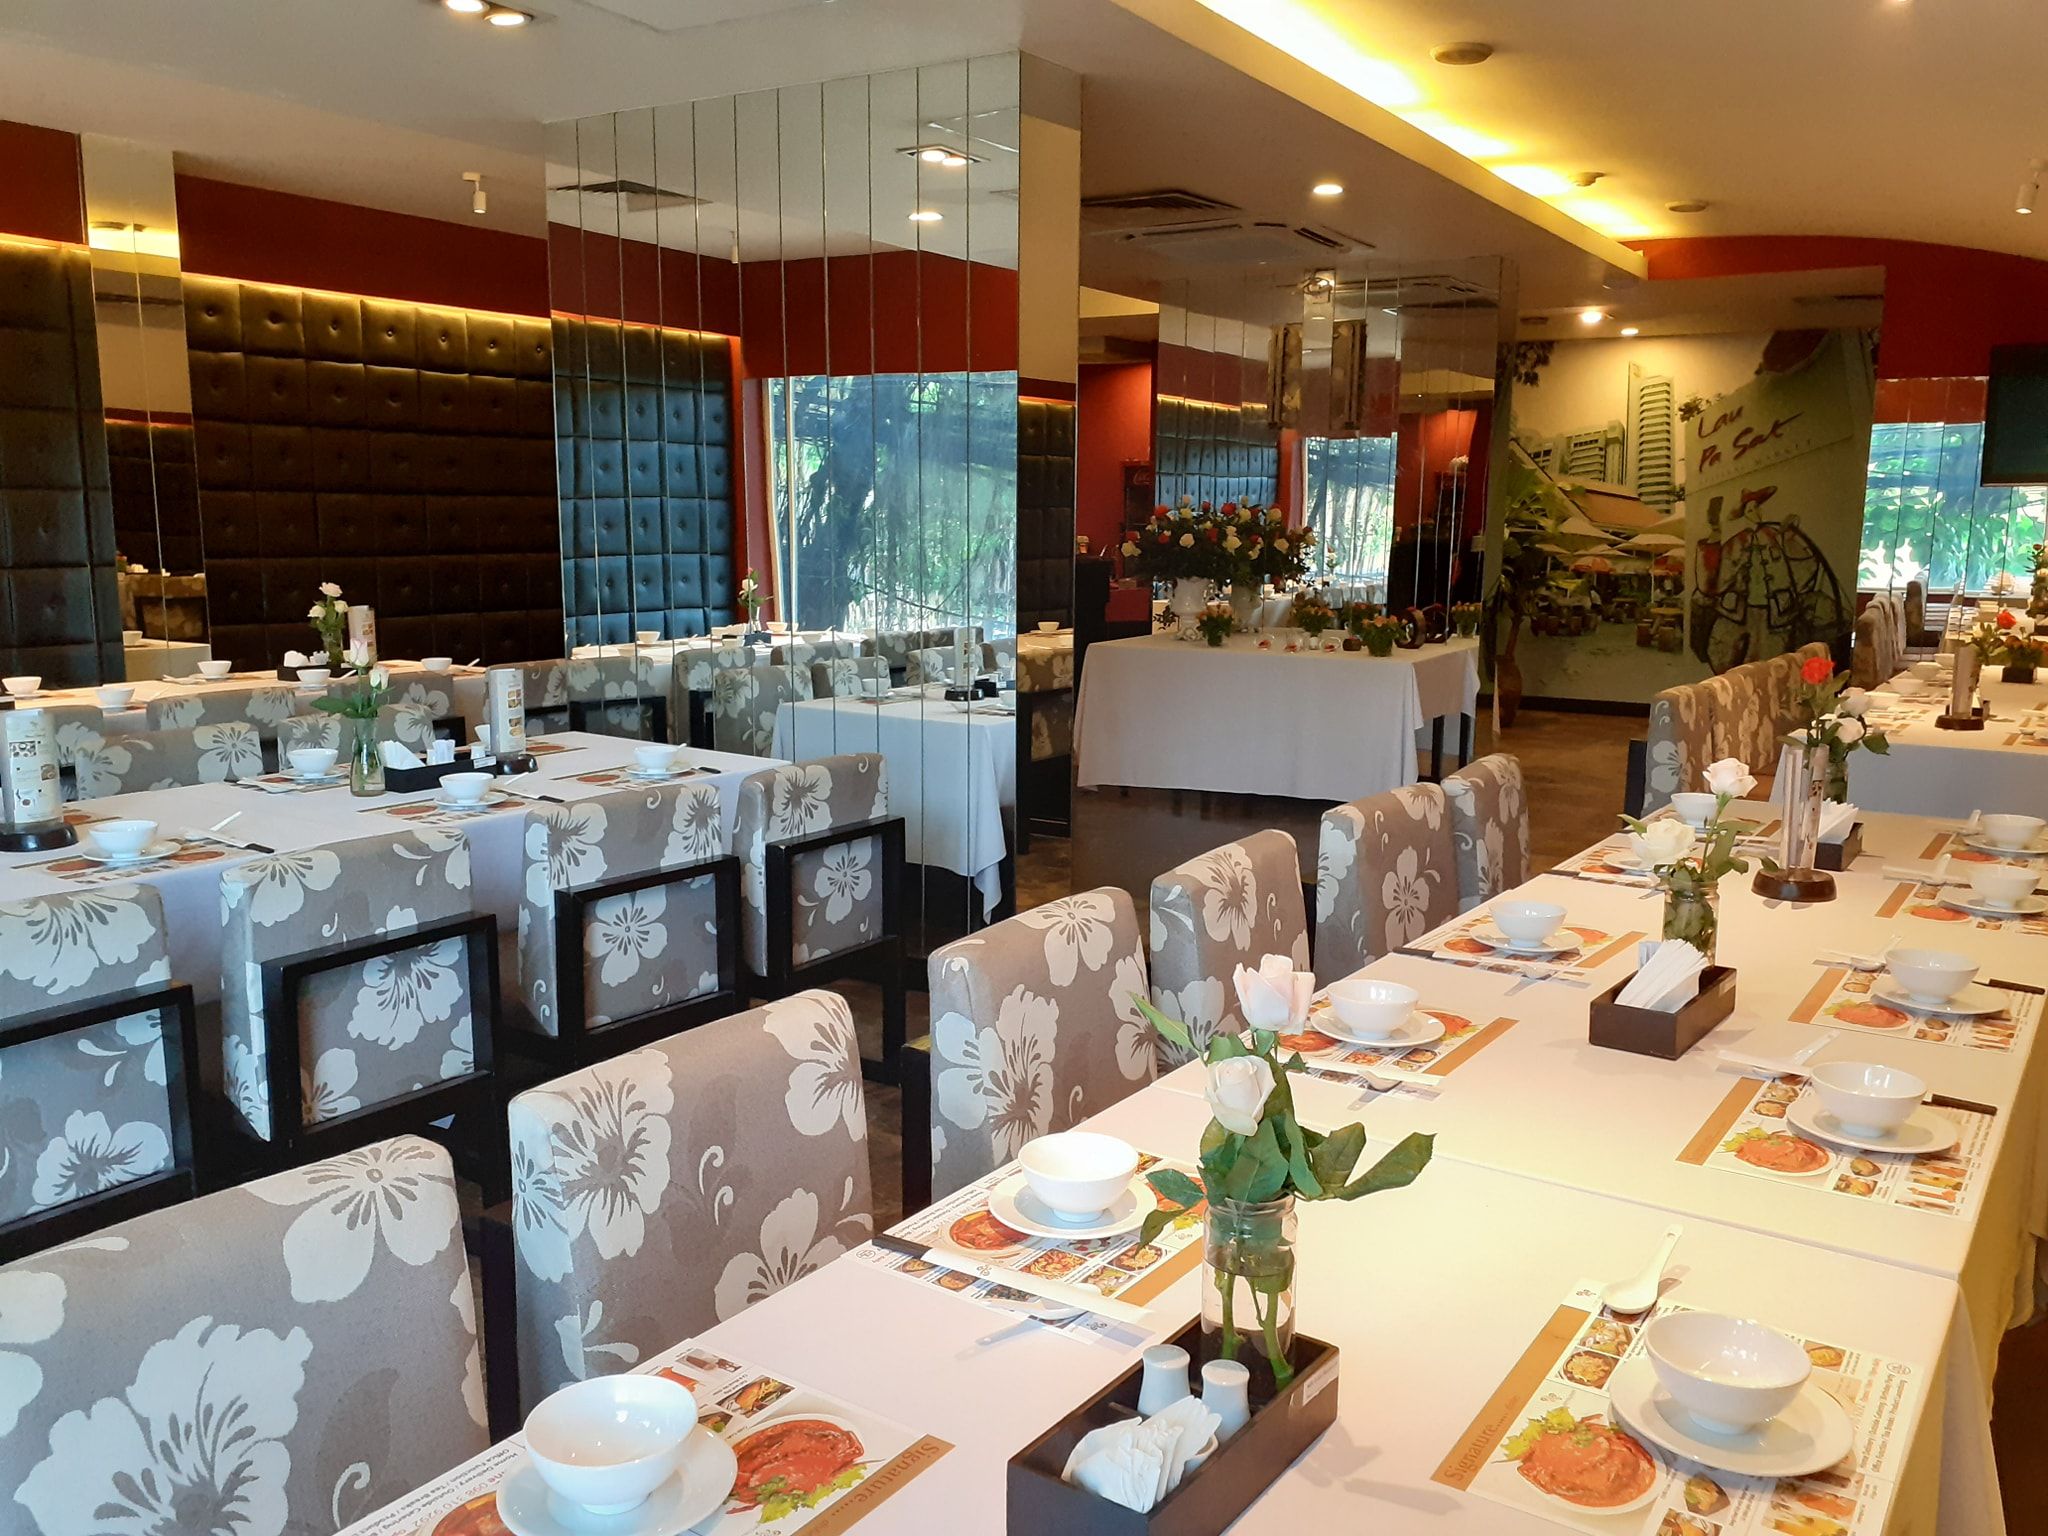 D’Lions Restaurant - Lê Duẩn